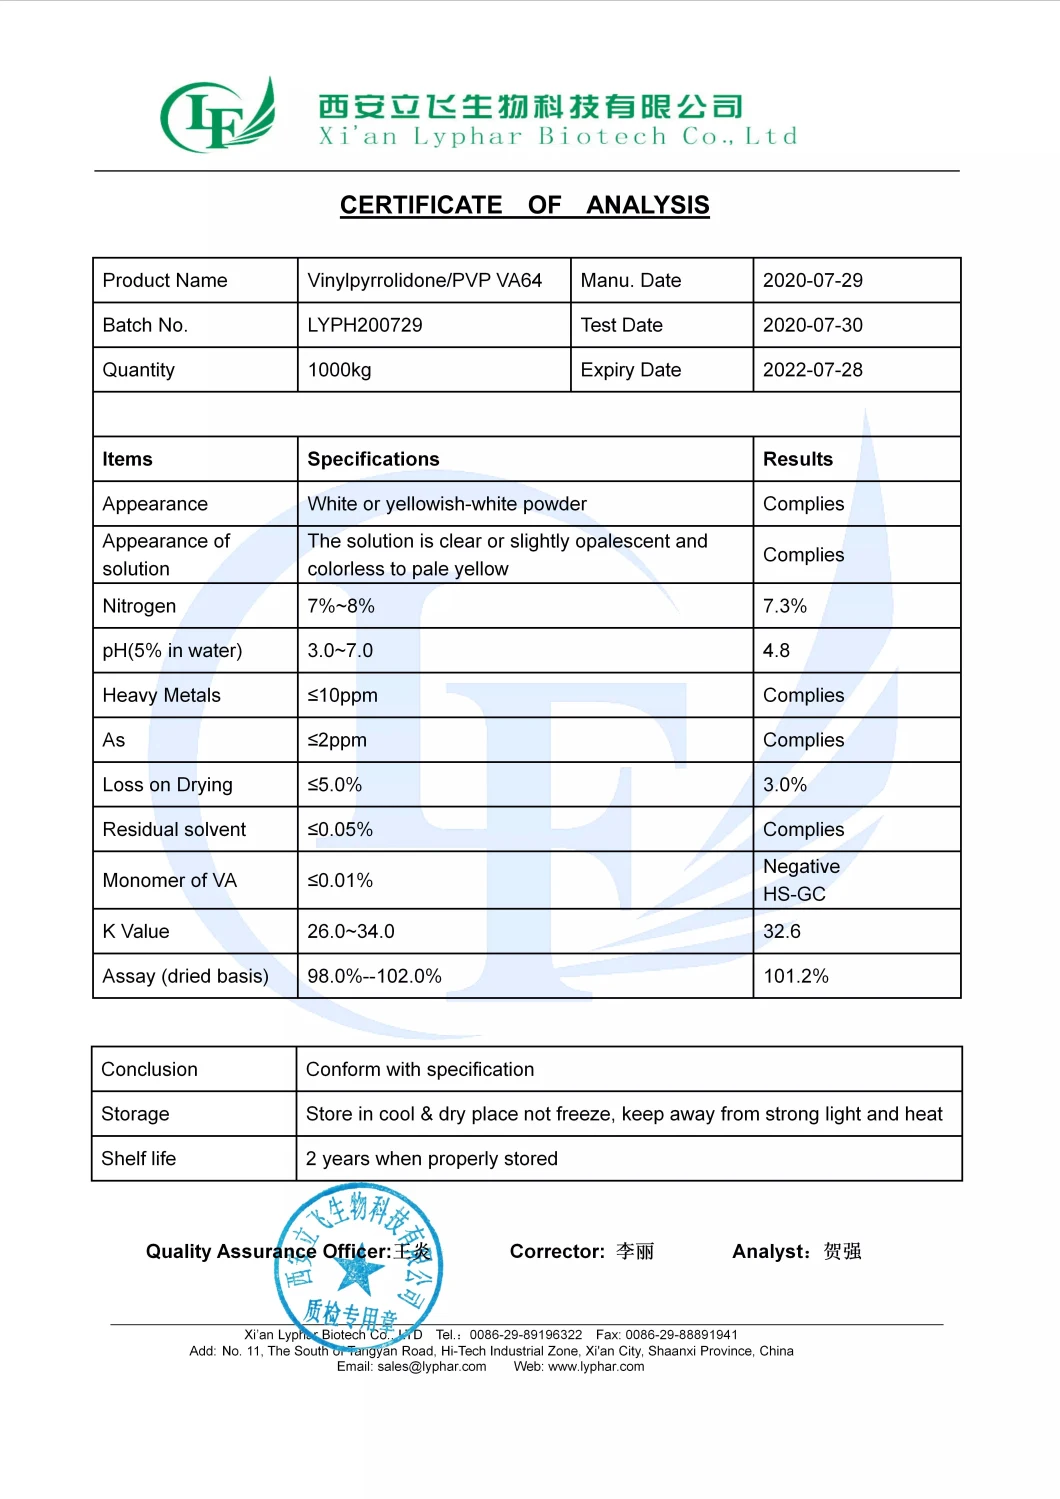 Hot Sell Surfactant Vinylpyrrolidone/Vinyl Pyrrolidone/Vinyl Acetate Copolymer